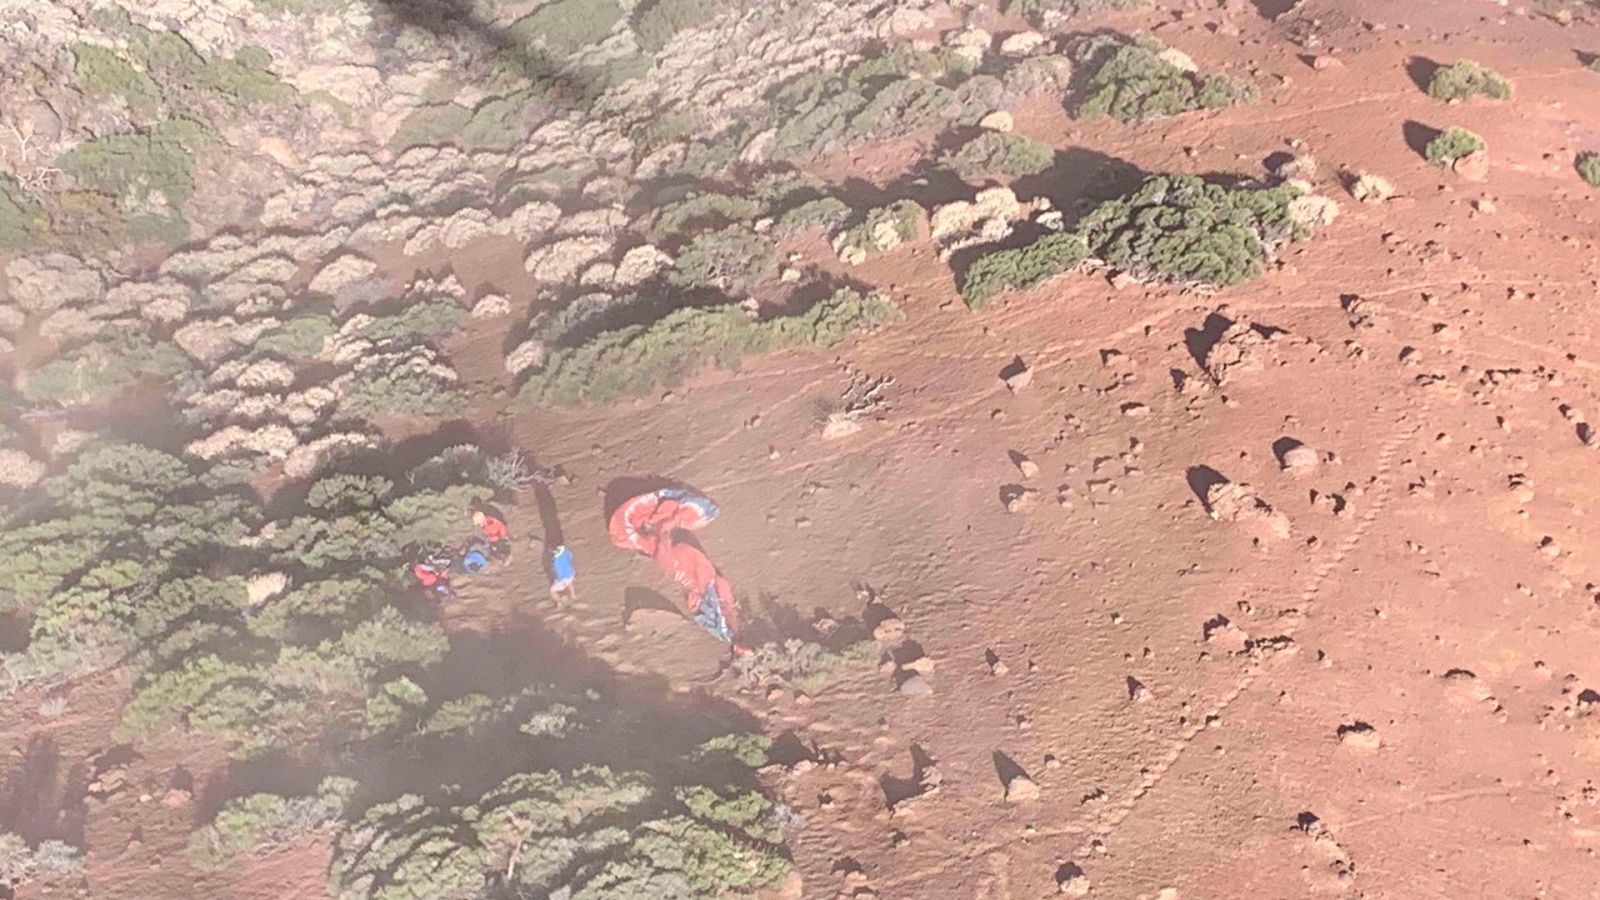 Imagen aérea del lugar del accidente facilitada por el 112 de Canarias